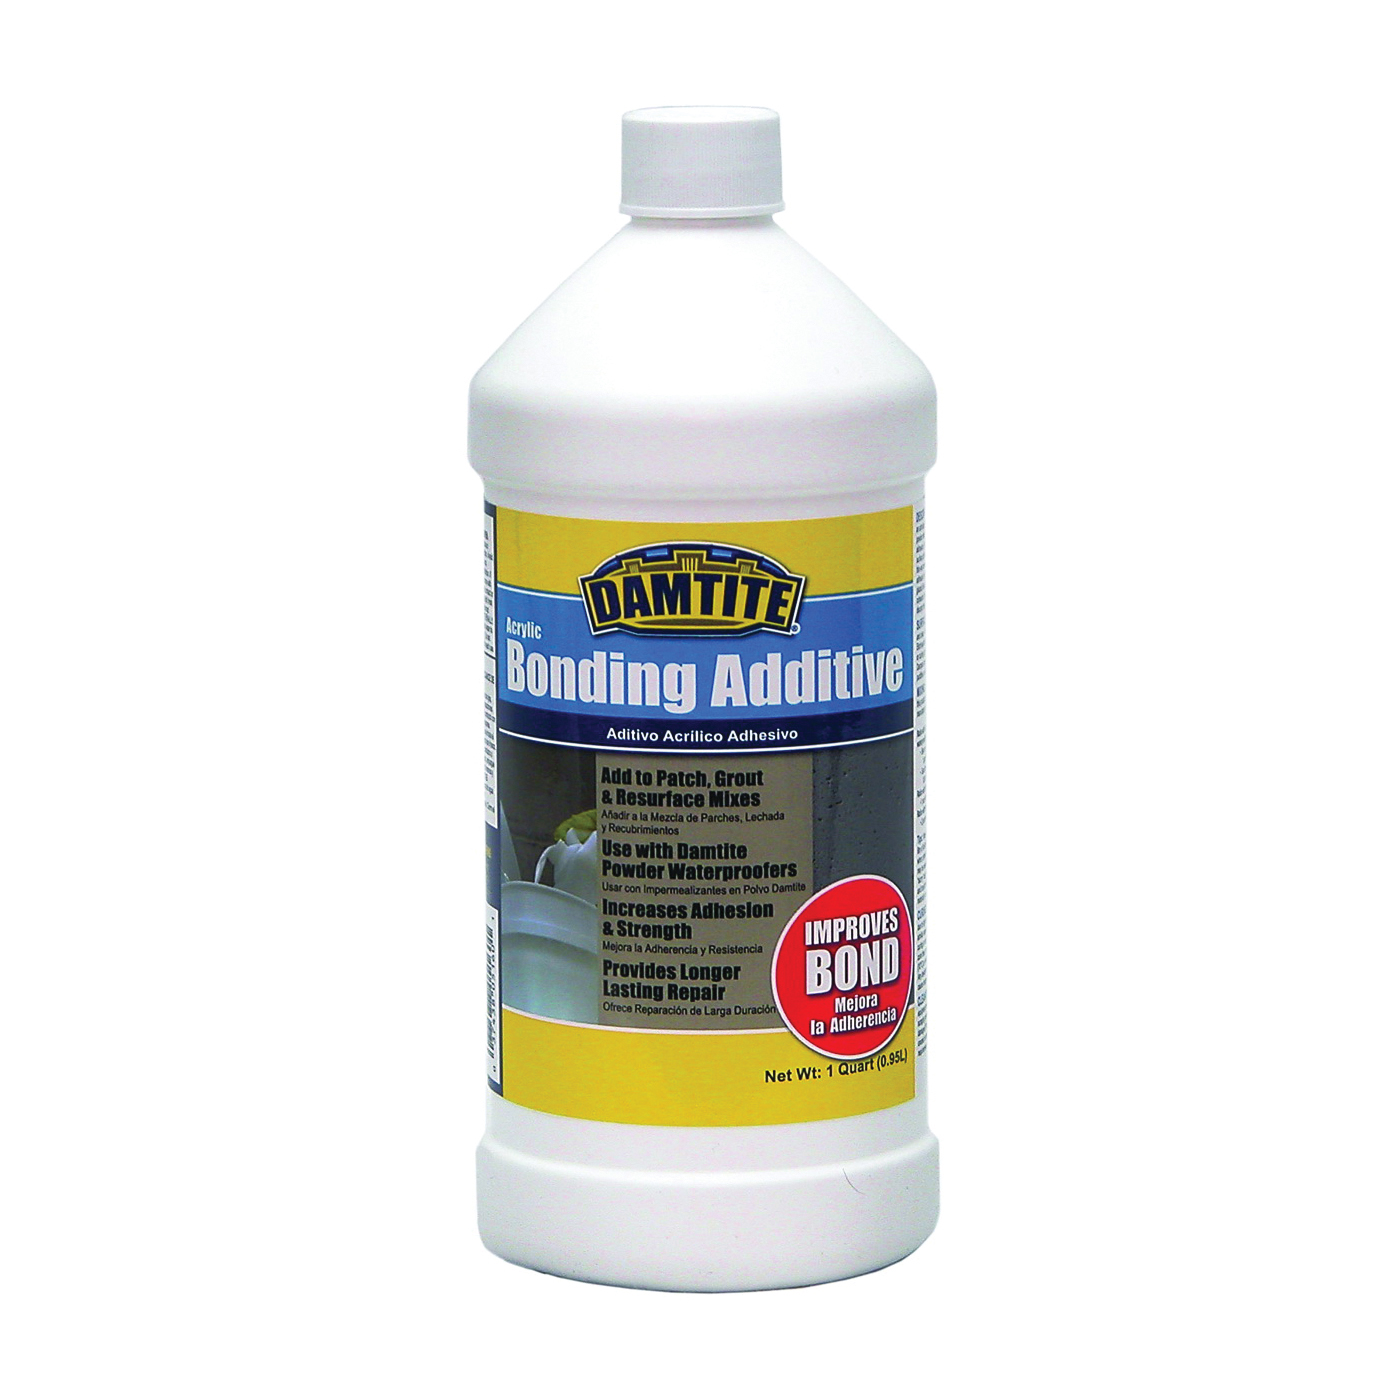 05160 Bonding Additive, Liquid, Ammonia, White, 1 qt Bottle